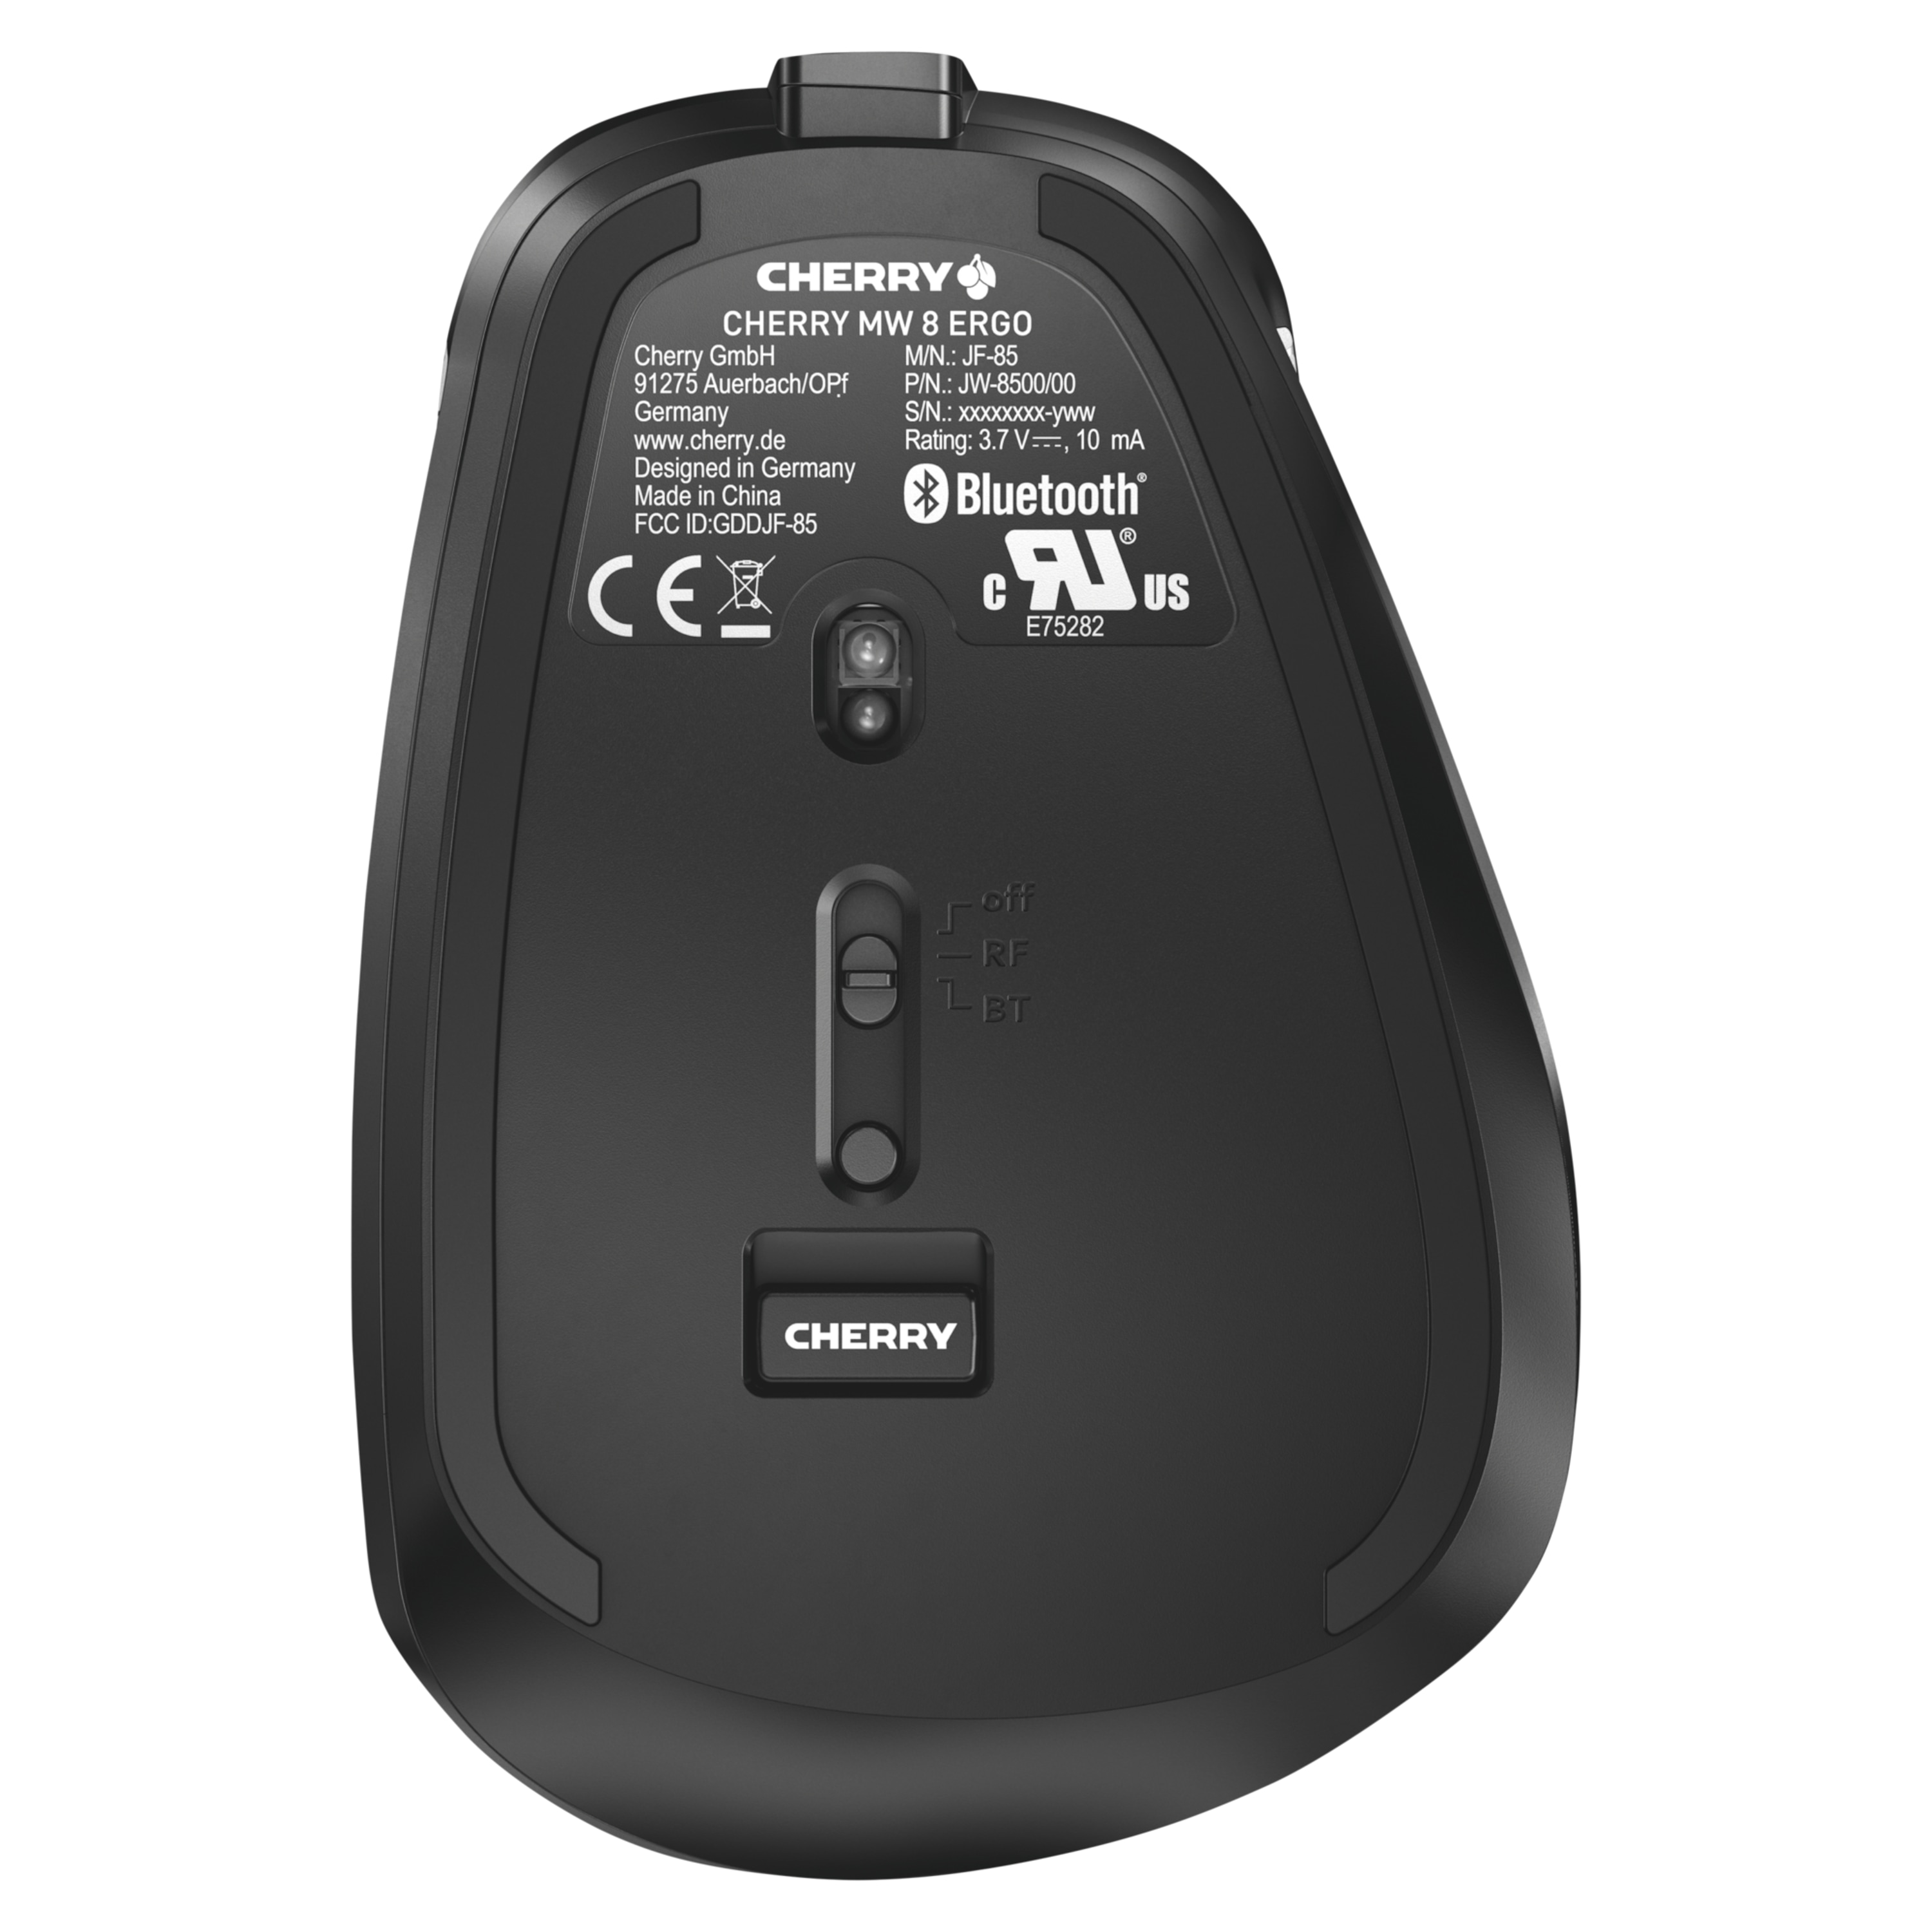 CHERRY MW 8 ERGO hochpräzise Maus, Laser-LED, Verbindung wahlweise über Bluetooth® oder 2.4 GHz Funk, 4 stufige Auflösung, edles Design